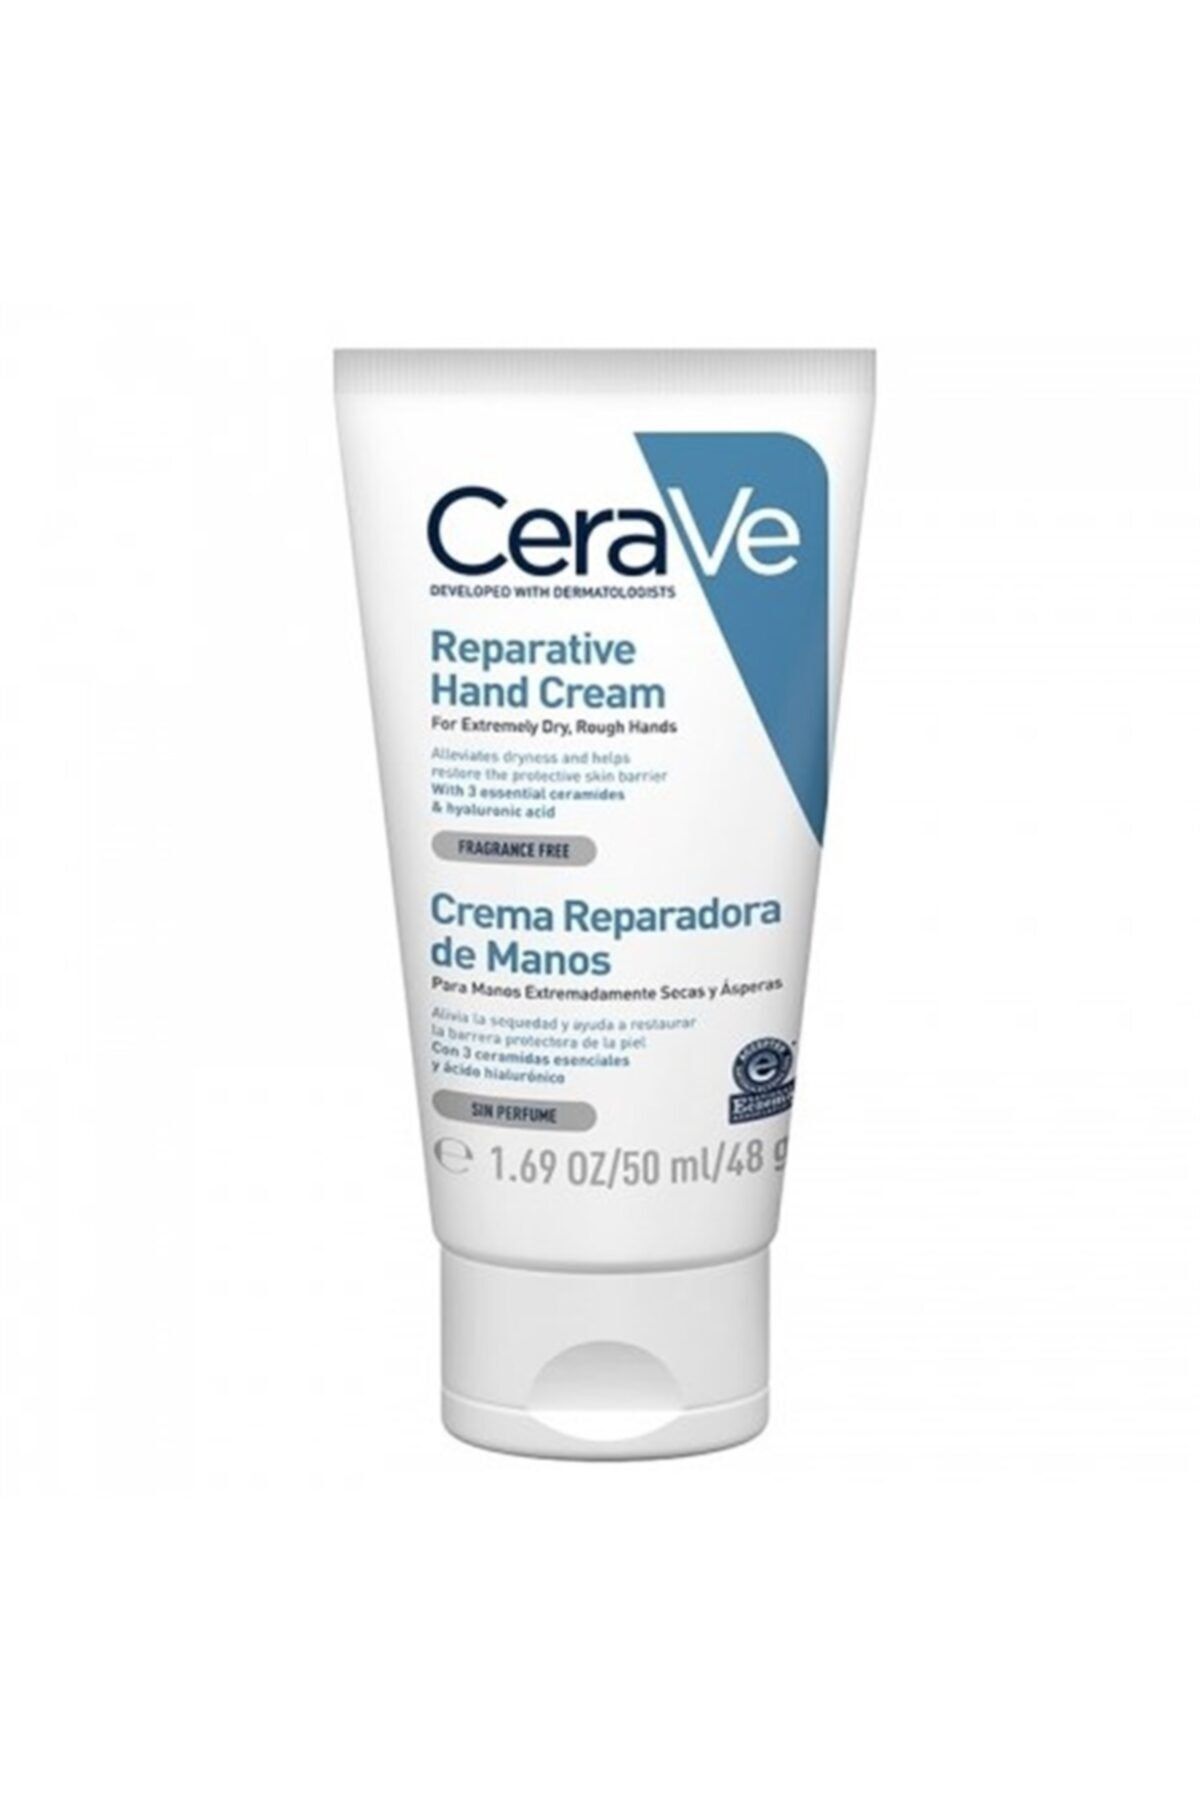 CeraVe Reparative Hand Cream Kuru & Sertleşmiş Eller Için 50 ml